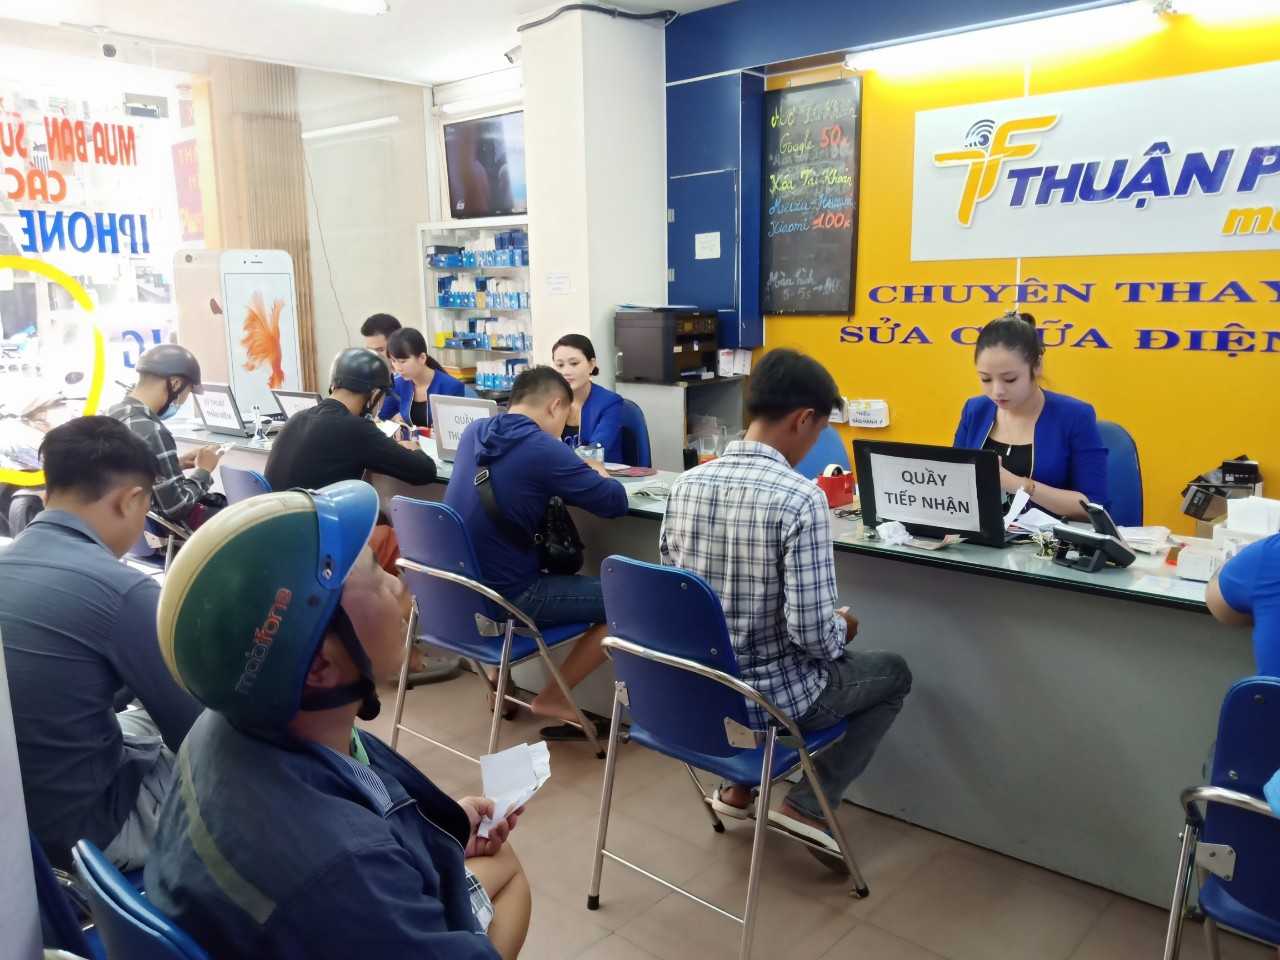 Trung tâm Thuận Phát sửa chữa điện thoại uy tín